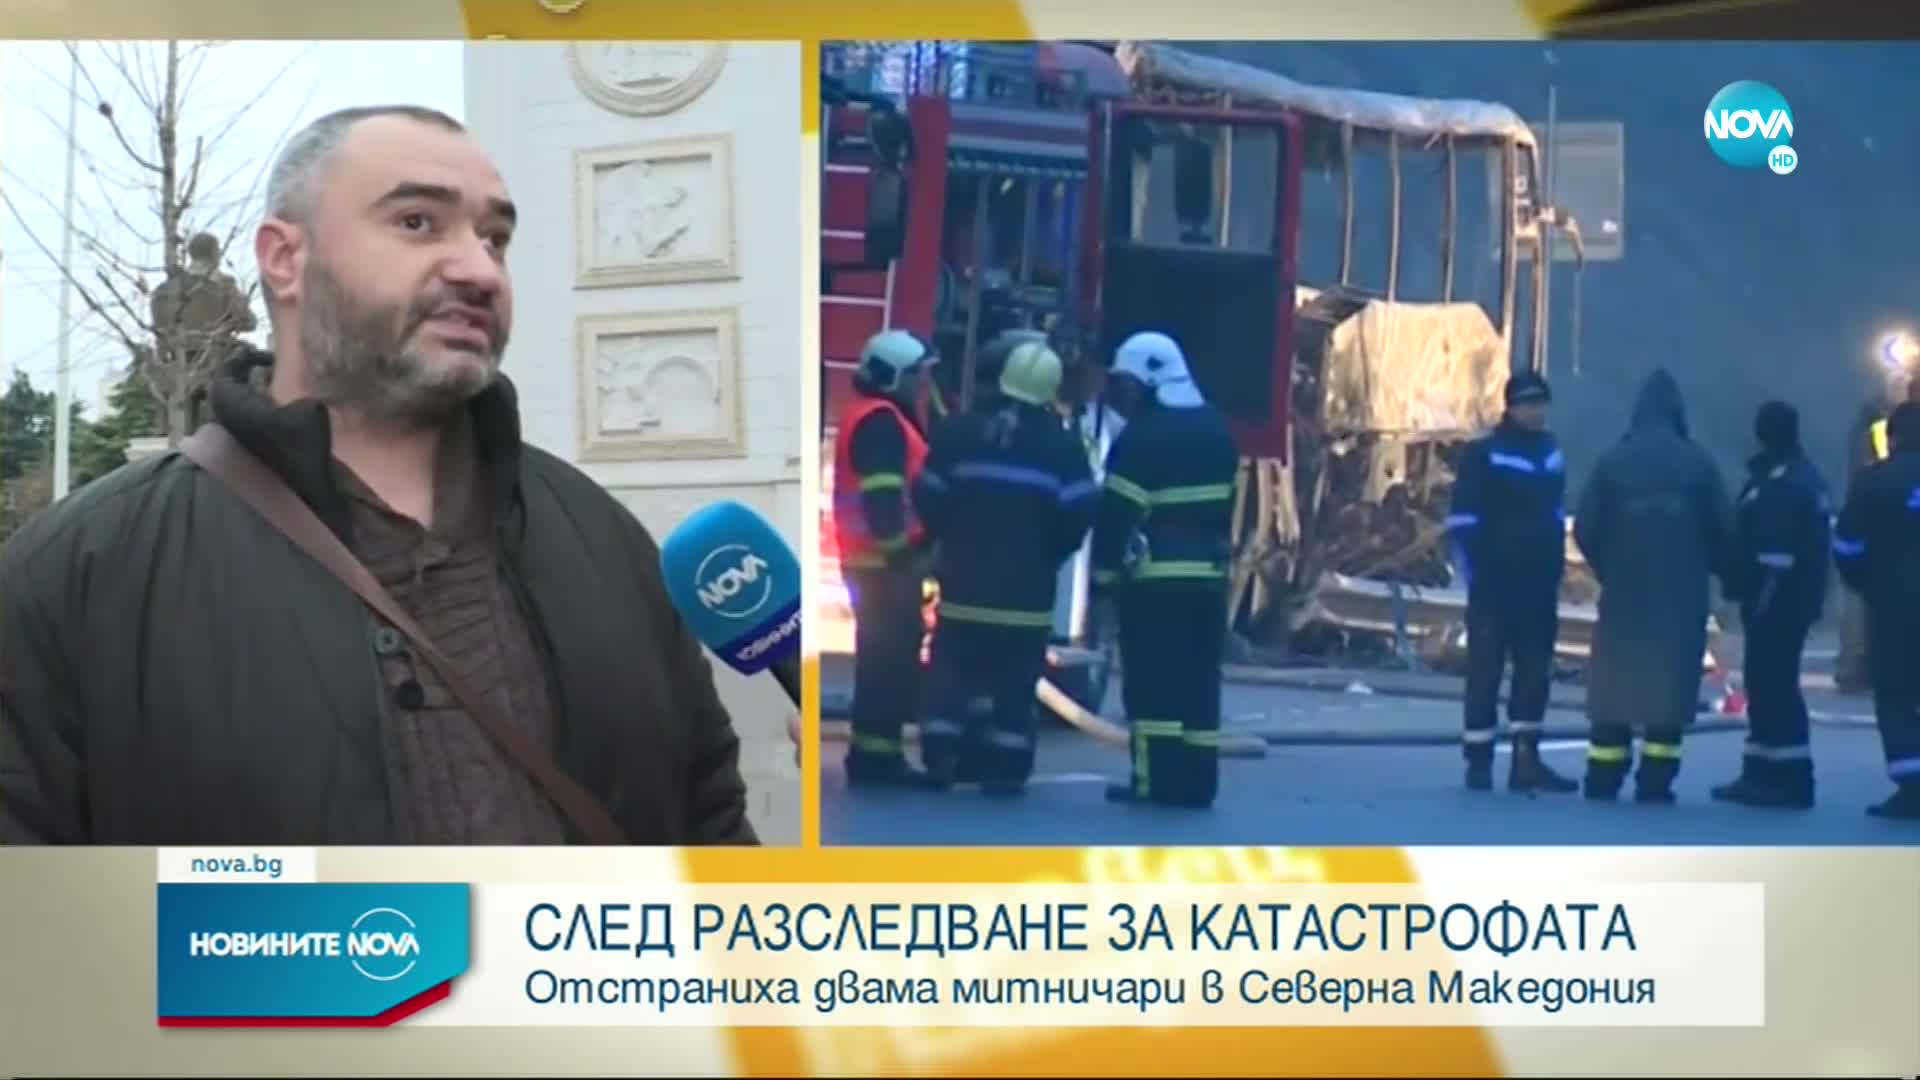 Македонски митничари пропуснали катастрофиралия автобус с нередовни документи